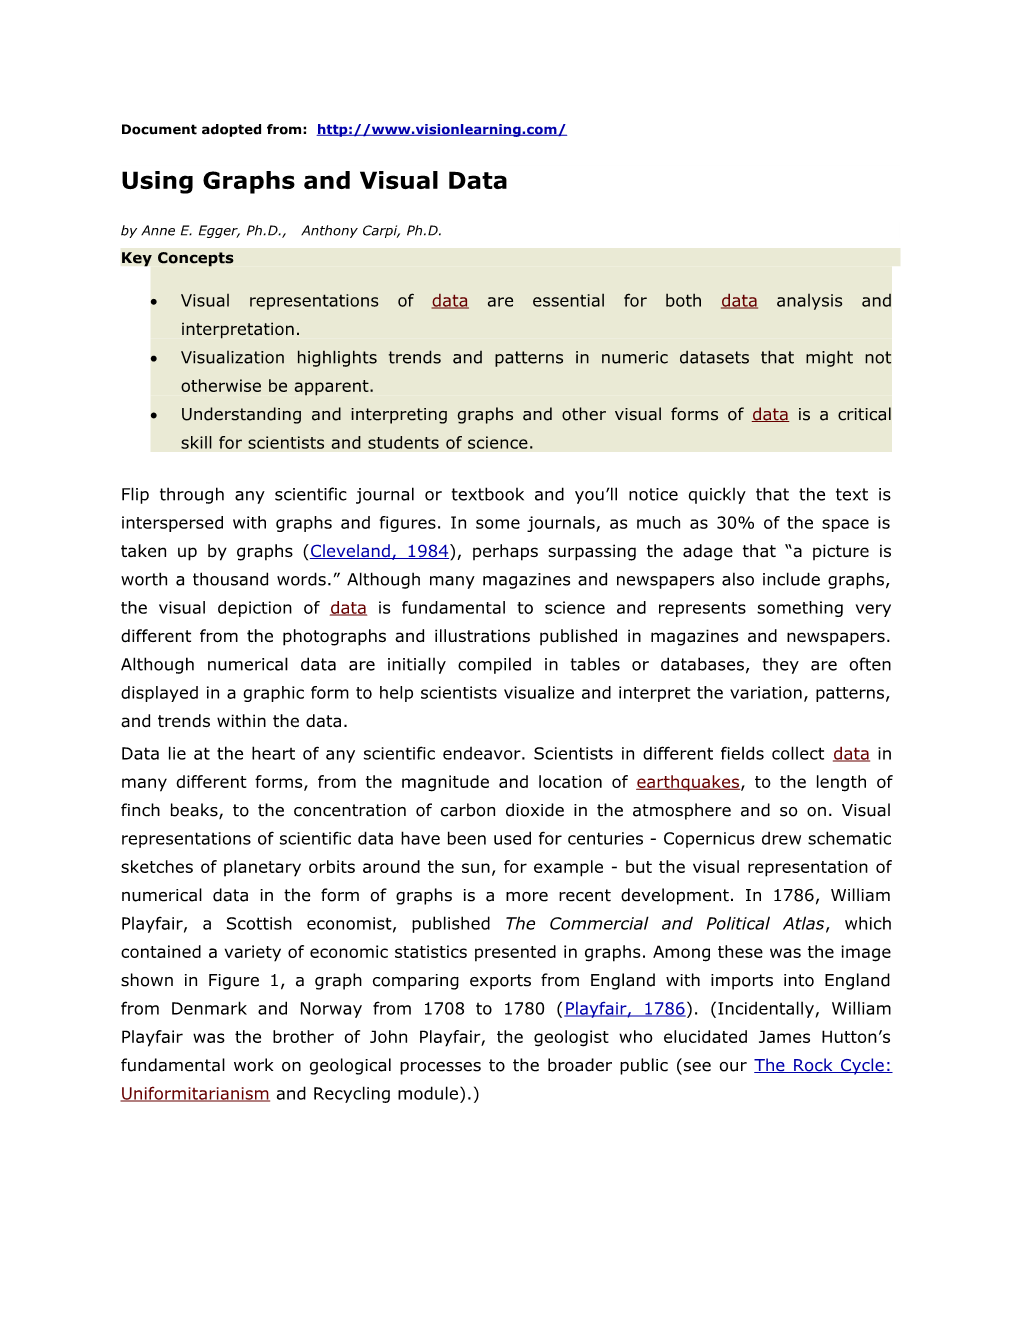 Using Graphs and Visual Data